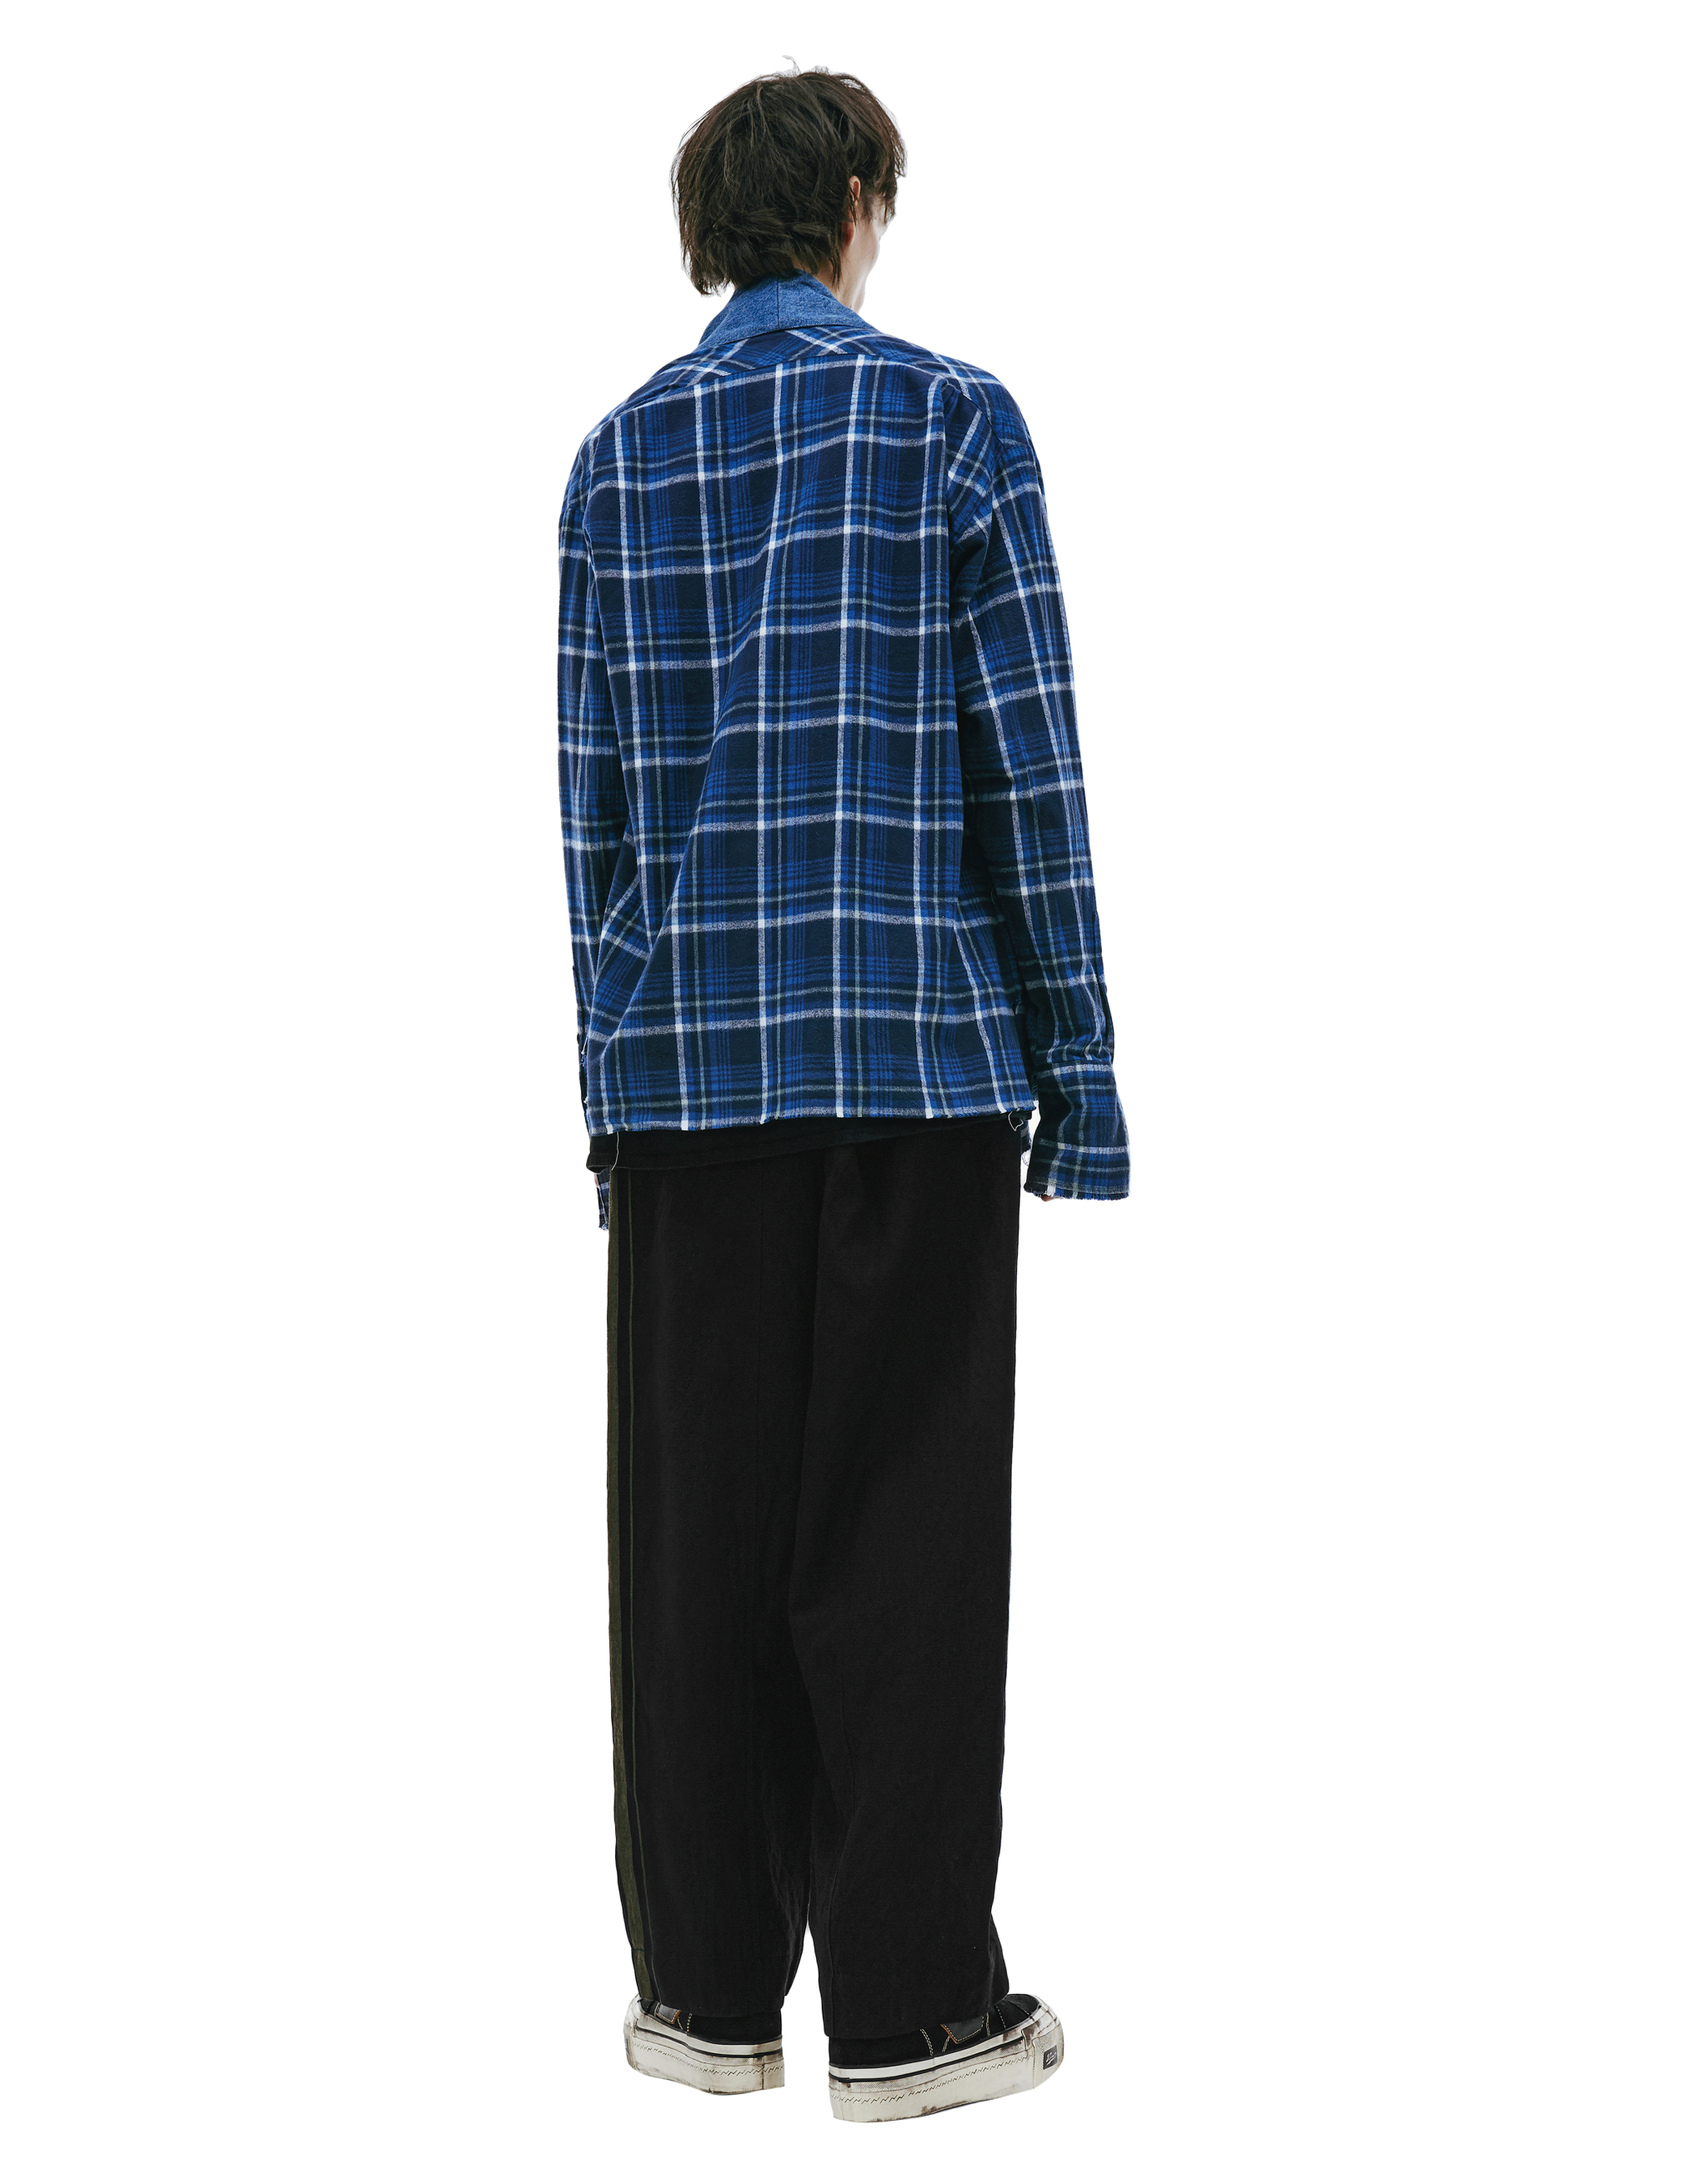 Комбинированная рубашка-кимоно Greg Lauren FM125, размер 4;5 - фото 4